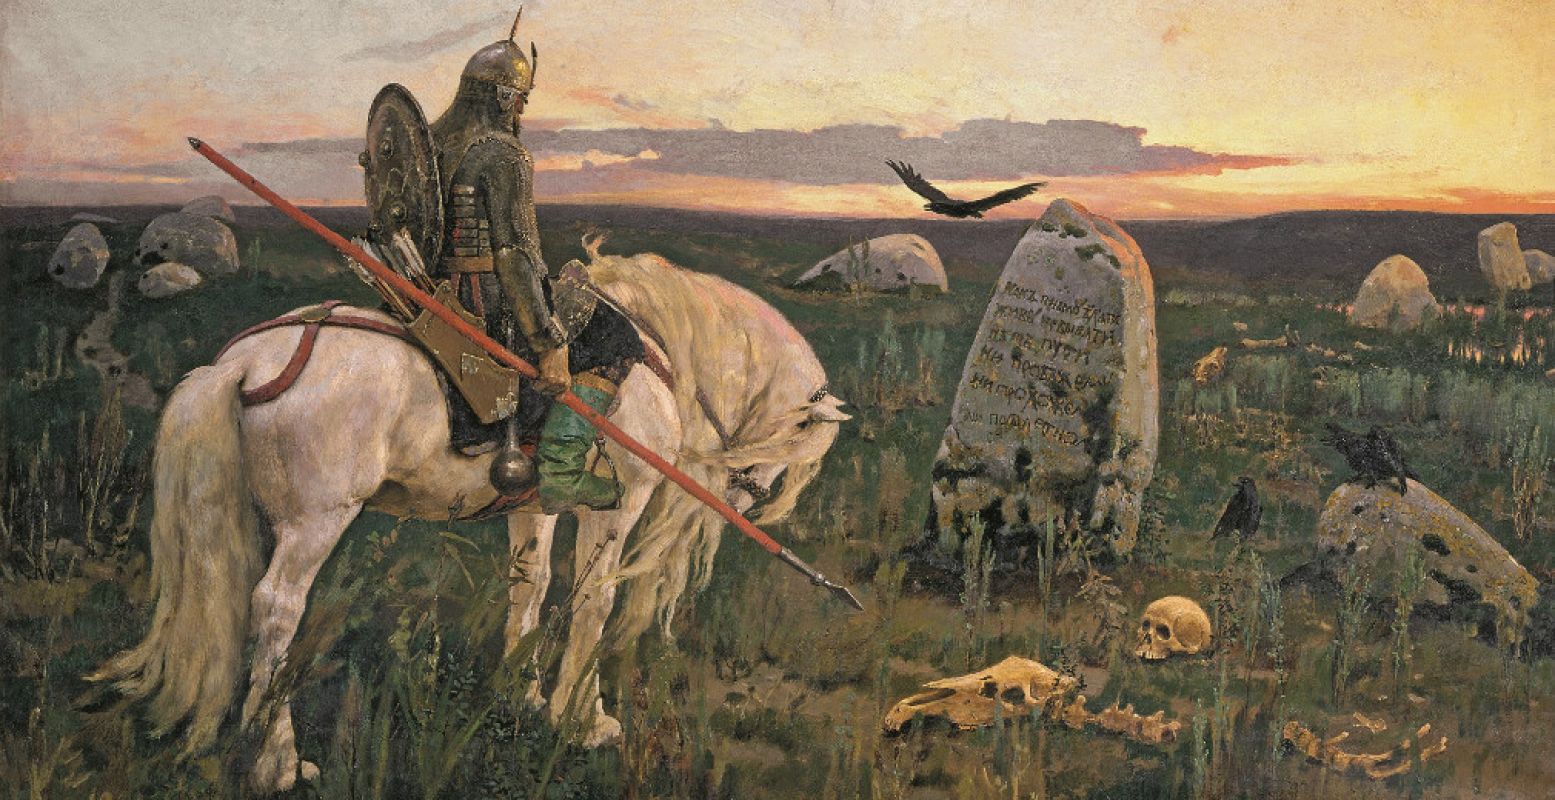 Viktor Vasnetsov (1848-1926), Ridder op driesprong, 1882 , olieverf op doek, 167 x 299 cm, collectie Staats Russisch Museum, St. Petersburg.